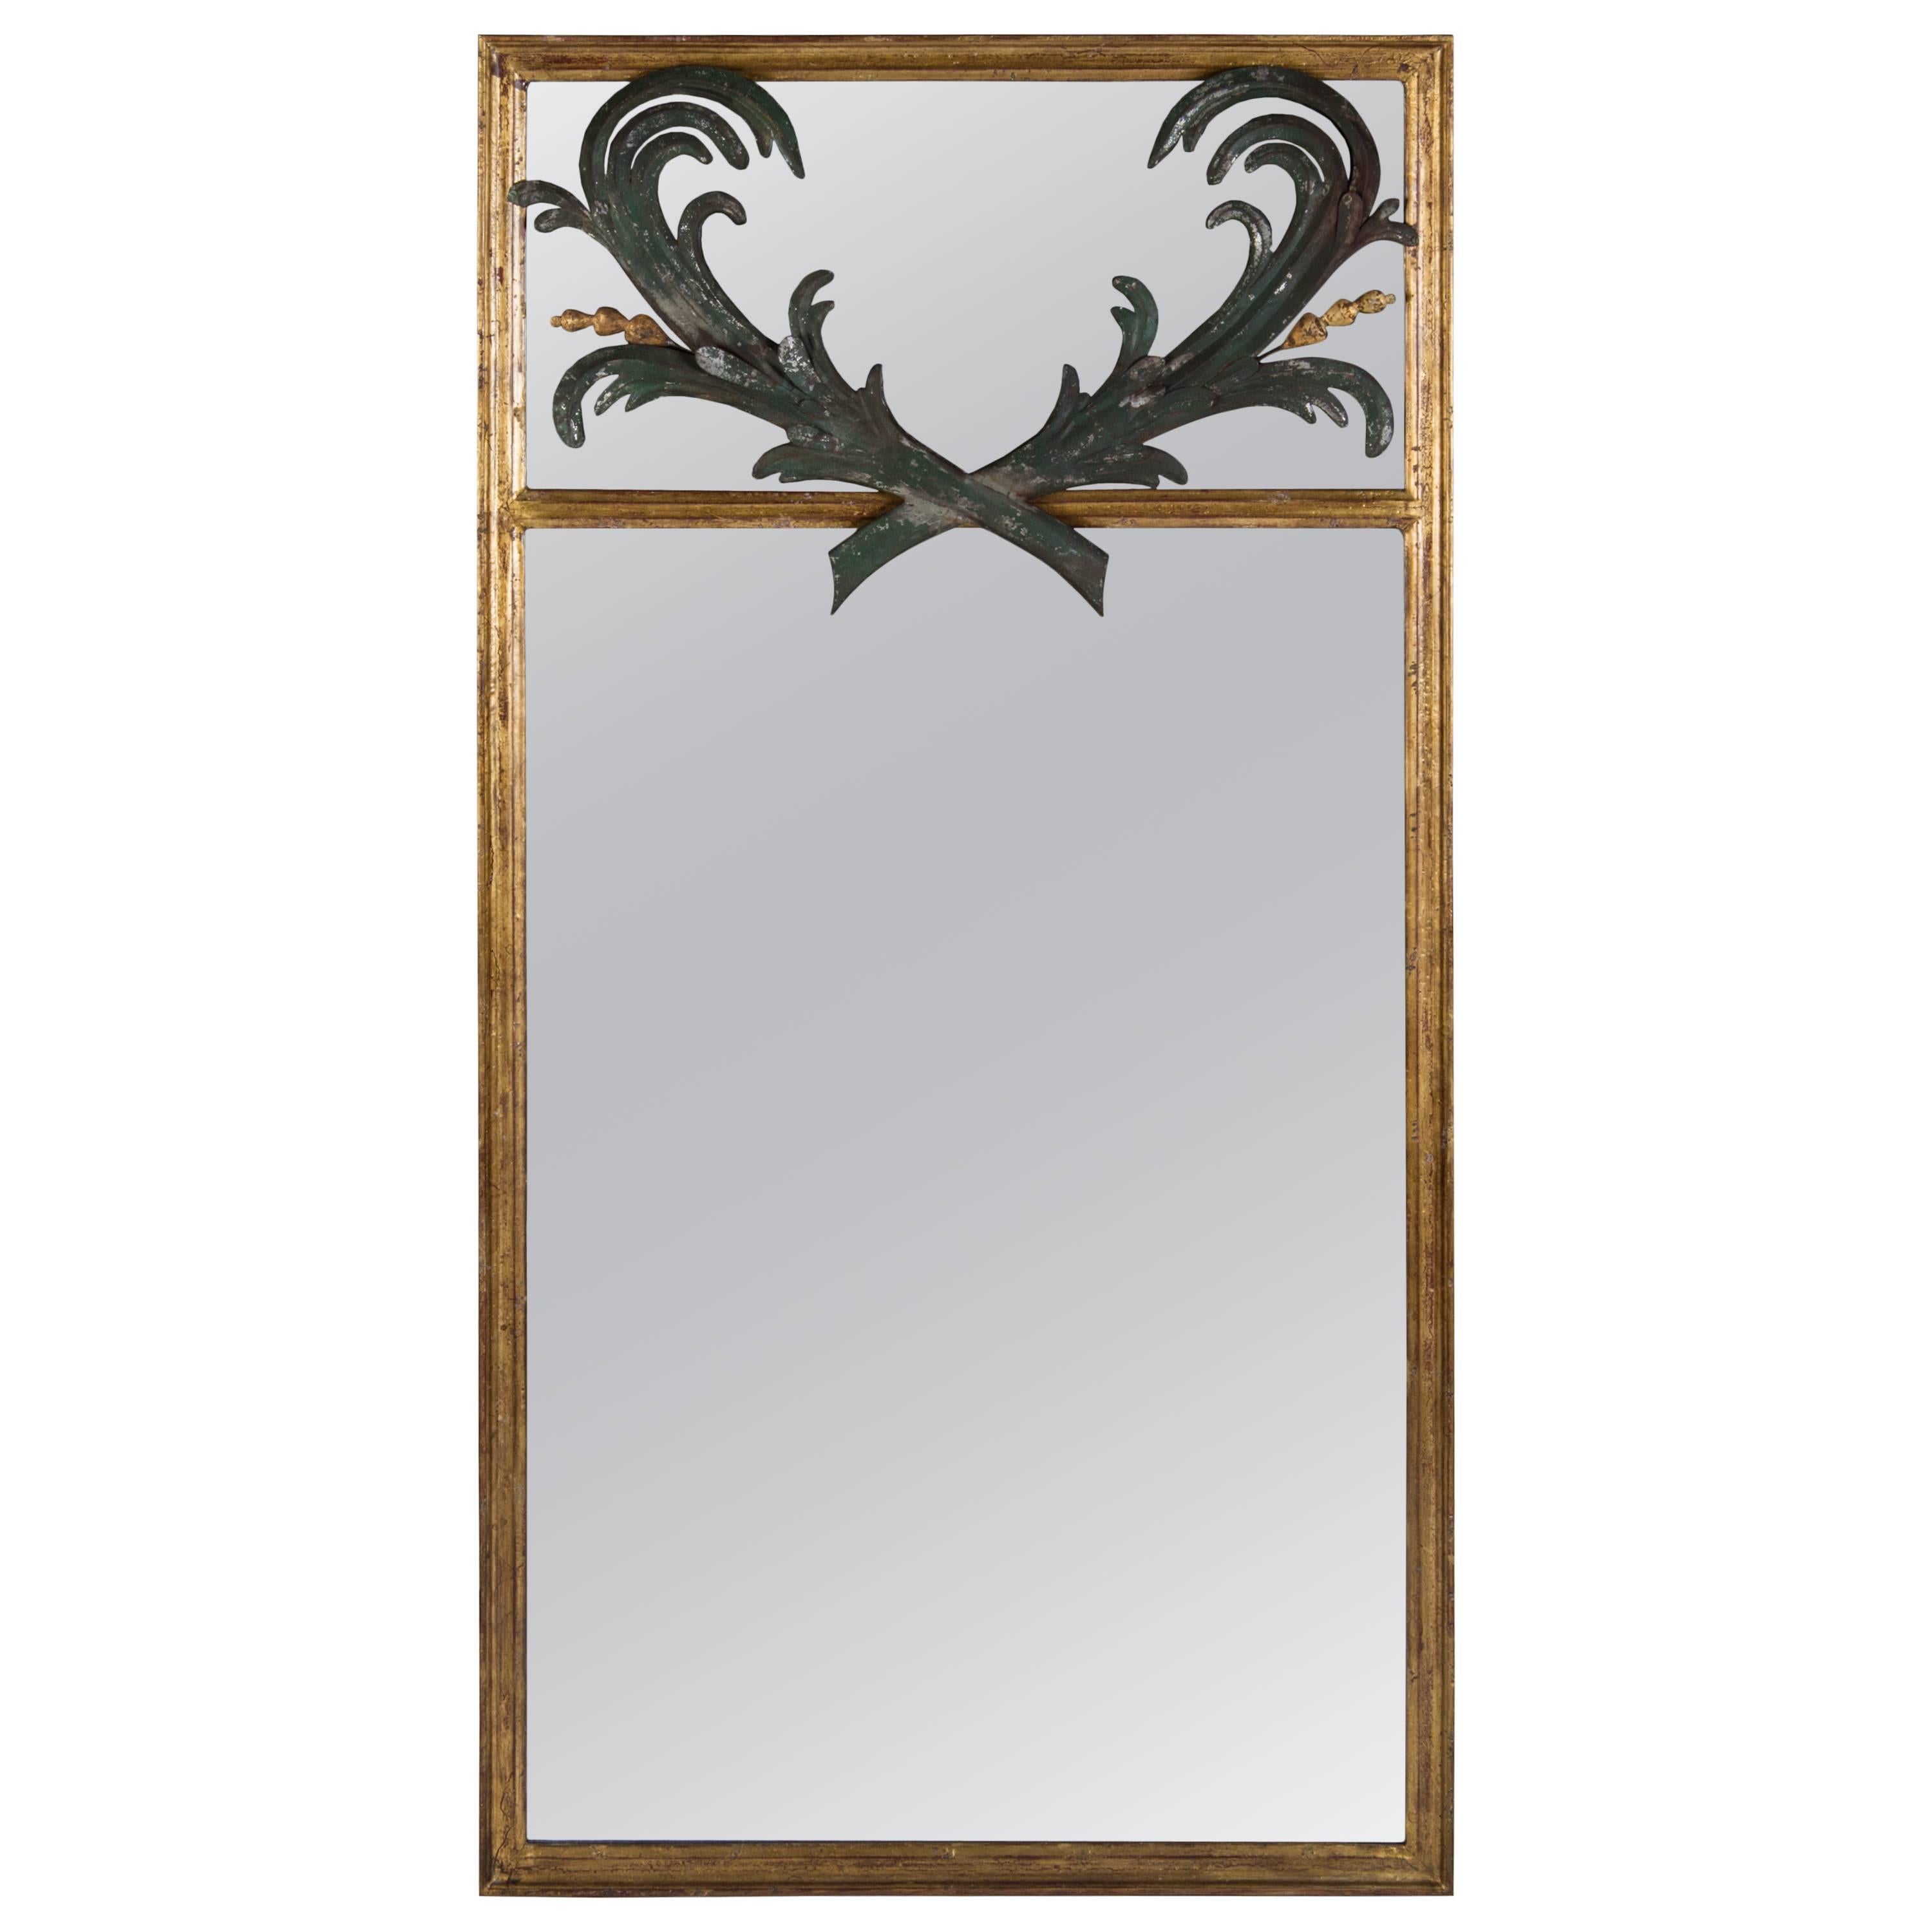 Gilt Trumeau Mirror with Leaf Motif